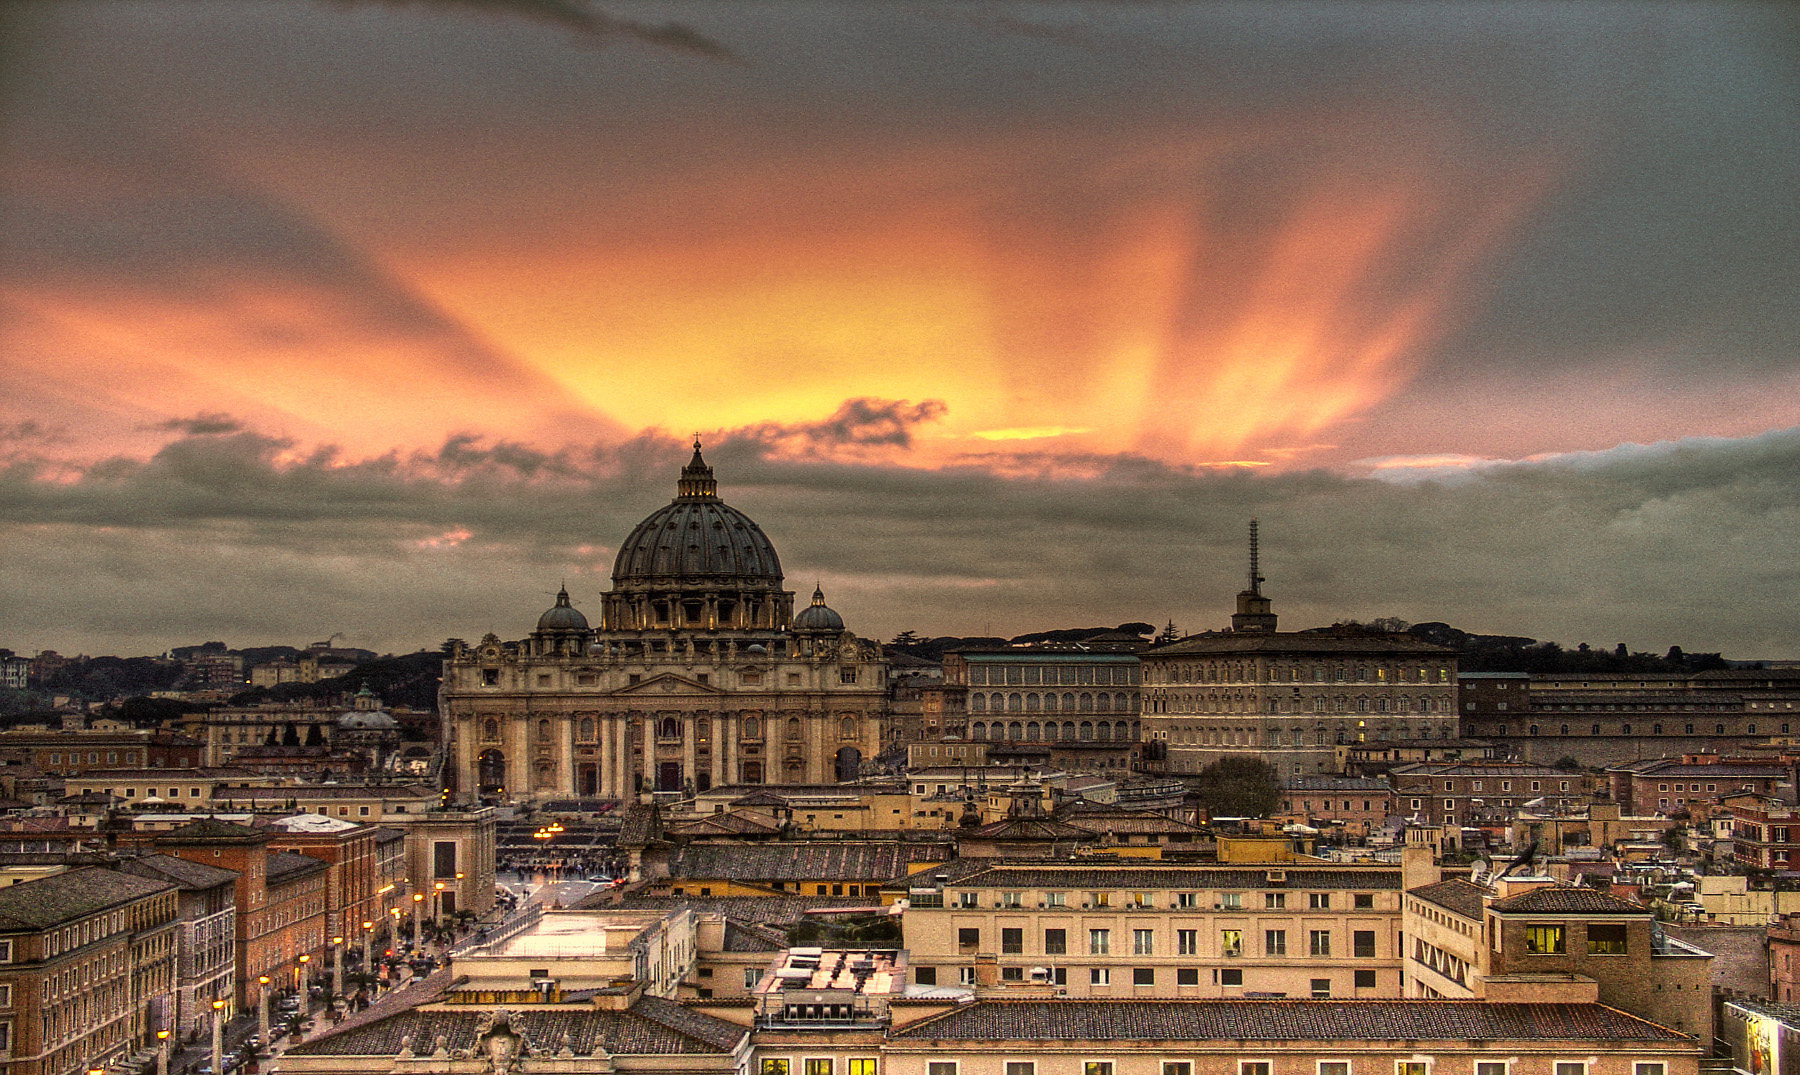  Se incrementan reportes de sospecha de lavado de dinero en el Vaticano